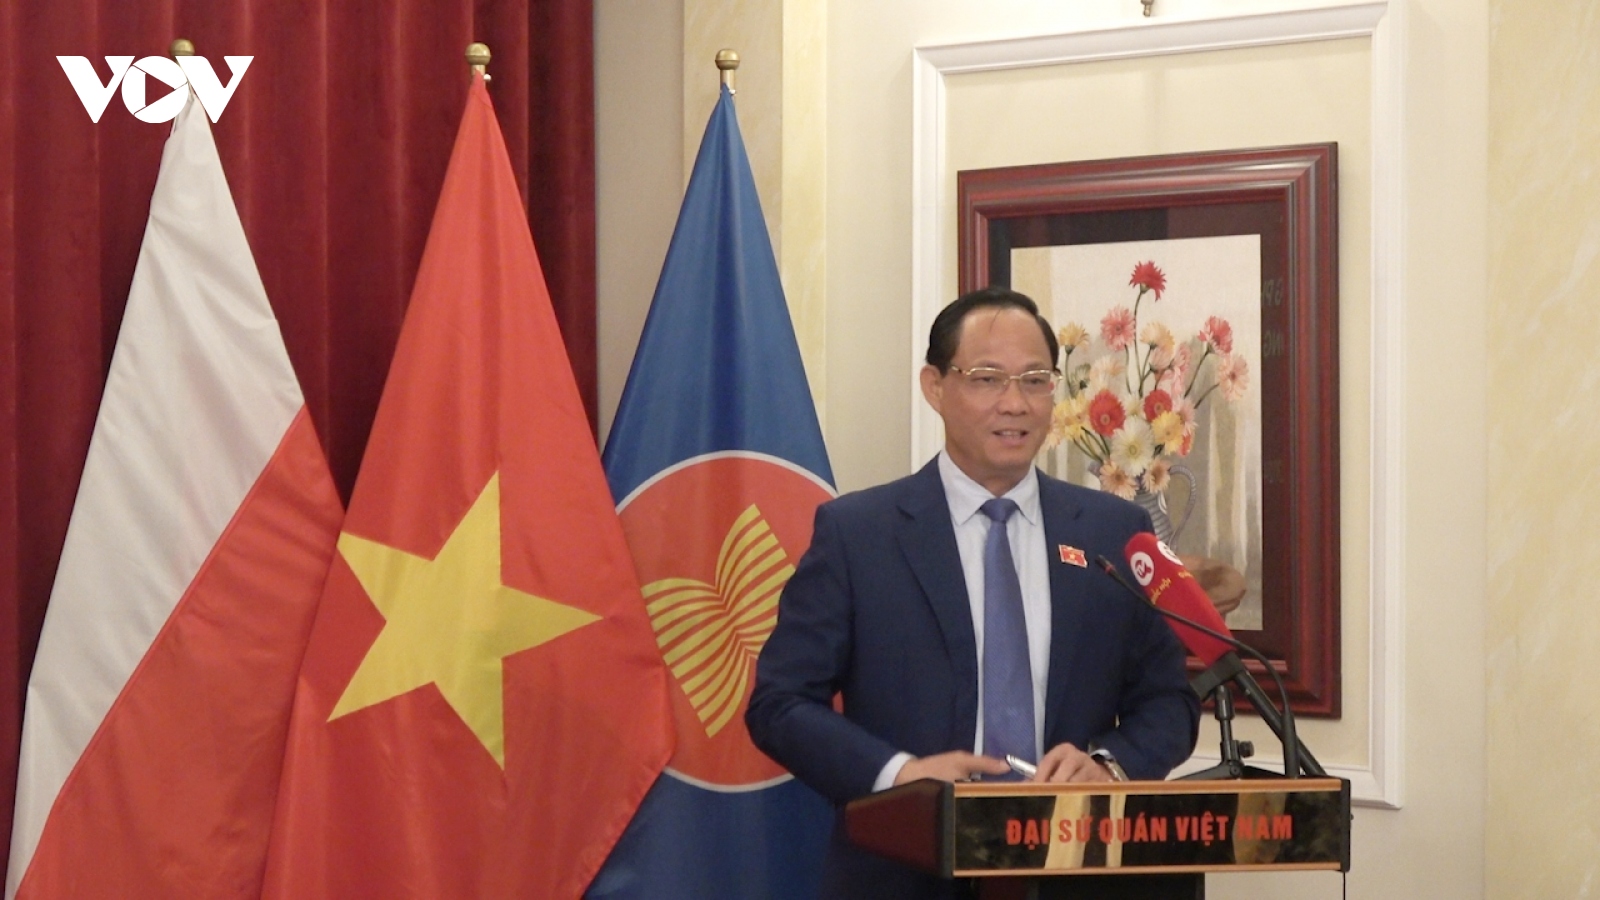 Phó Chủ tịch Quốc hội thăm ĐSQ, gặp gỡ cộng đồng người Việt tại Ba Lan